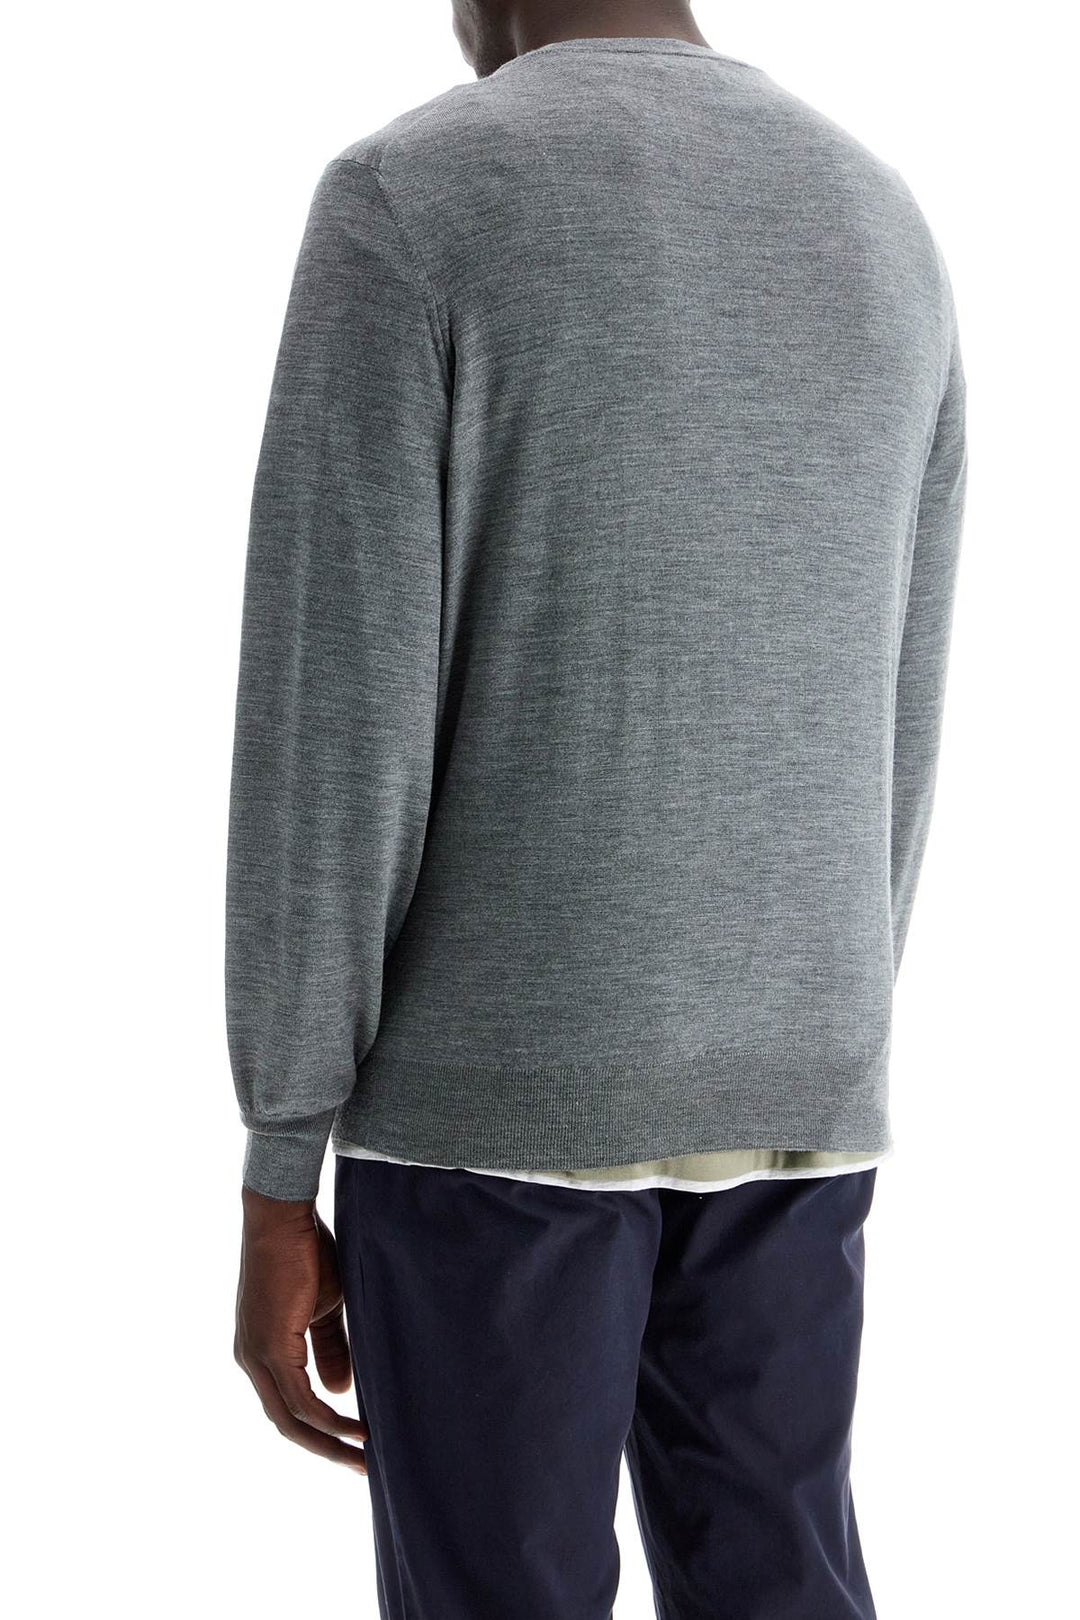 Brunello Cucinelli Fine Wool Cashmere Sweater   Grey